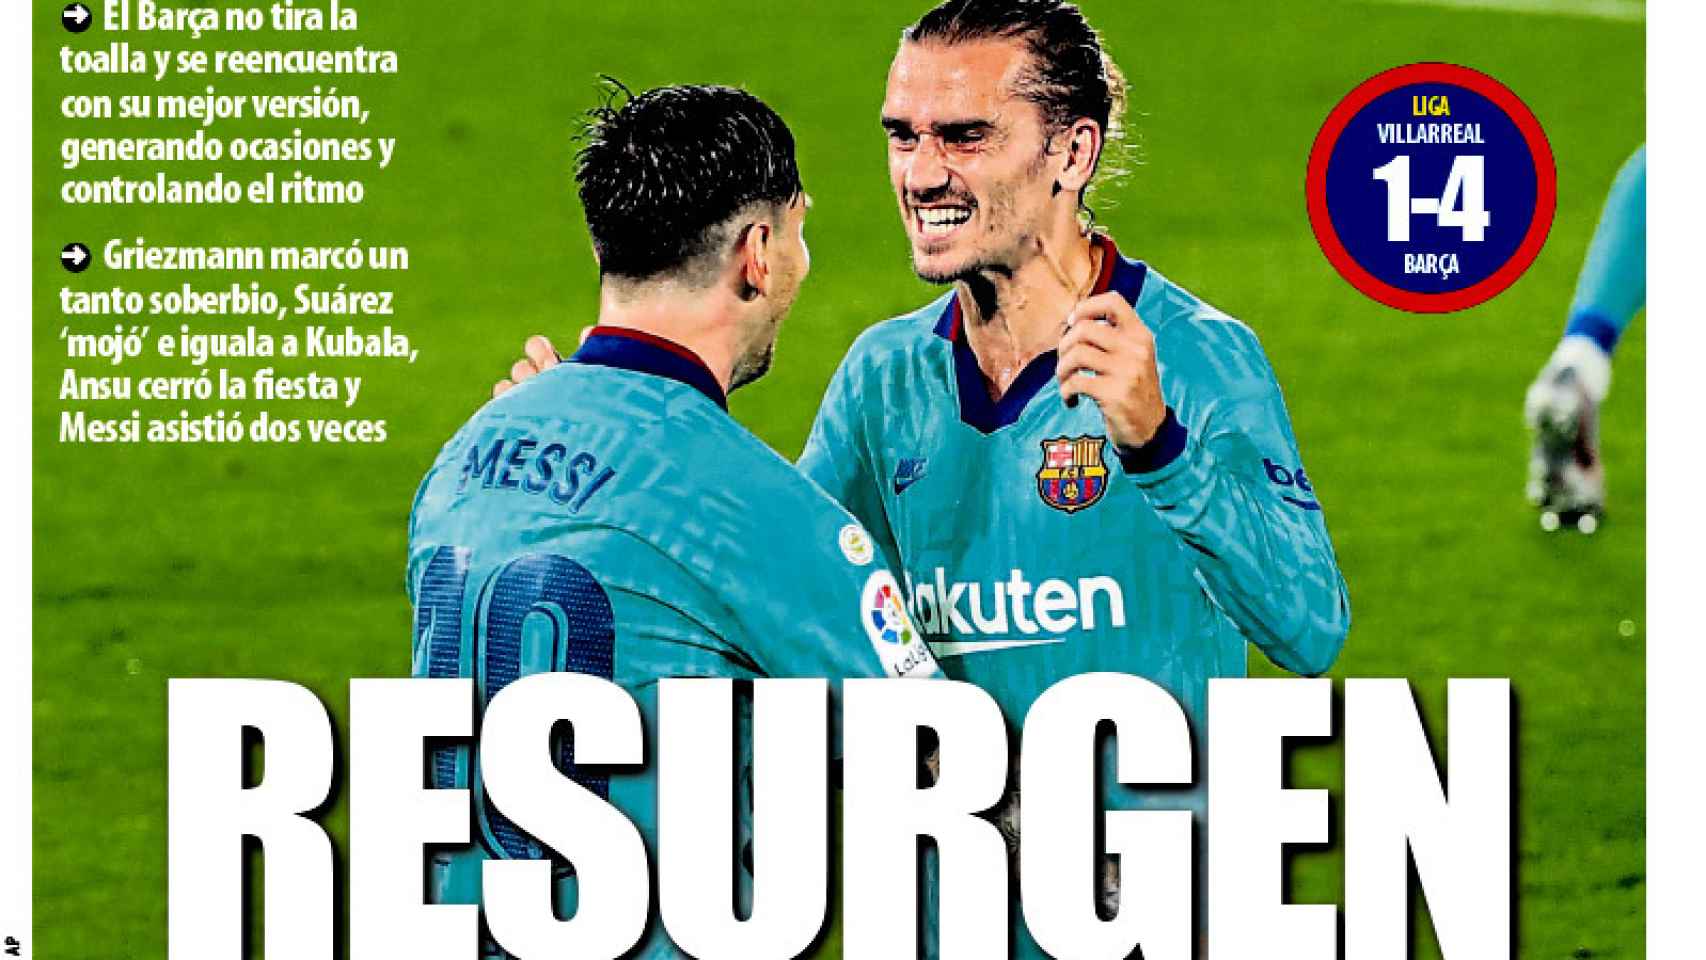 La portada del diario Mundo Deportivo (06/07/2020)